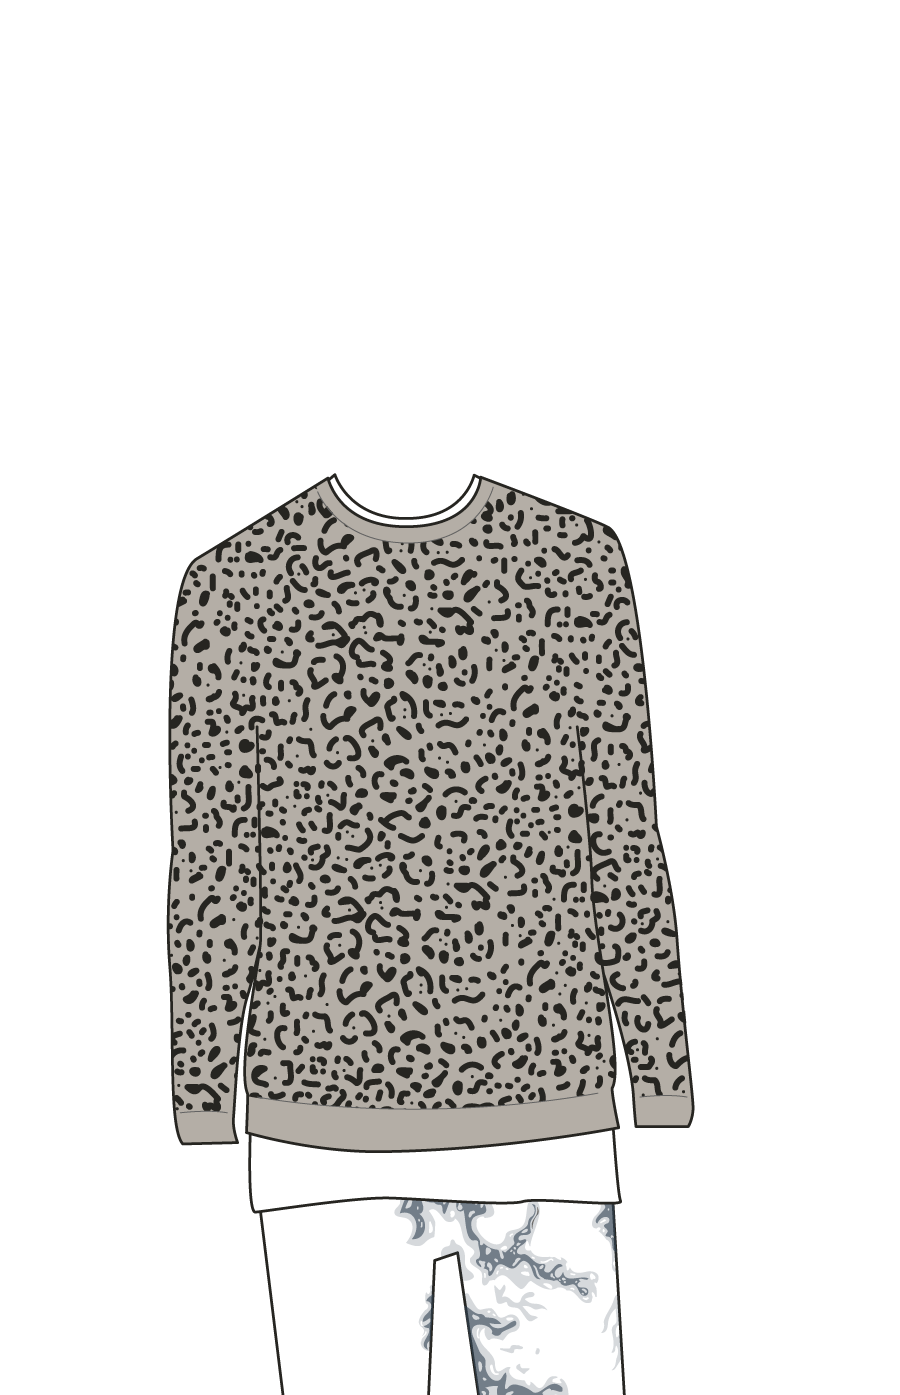 tan sweater with cheetah print